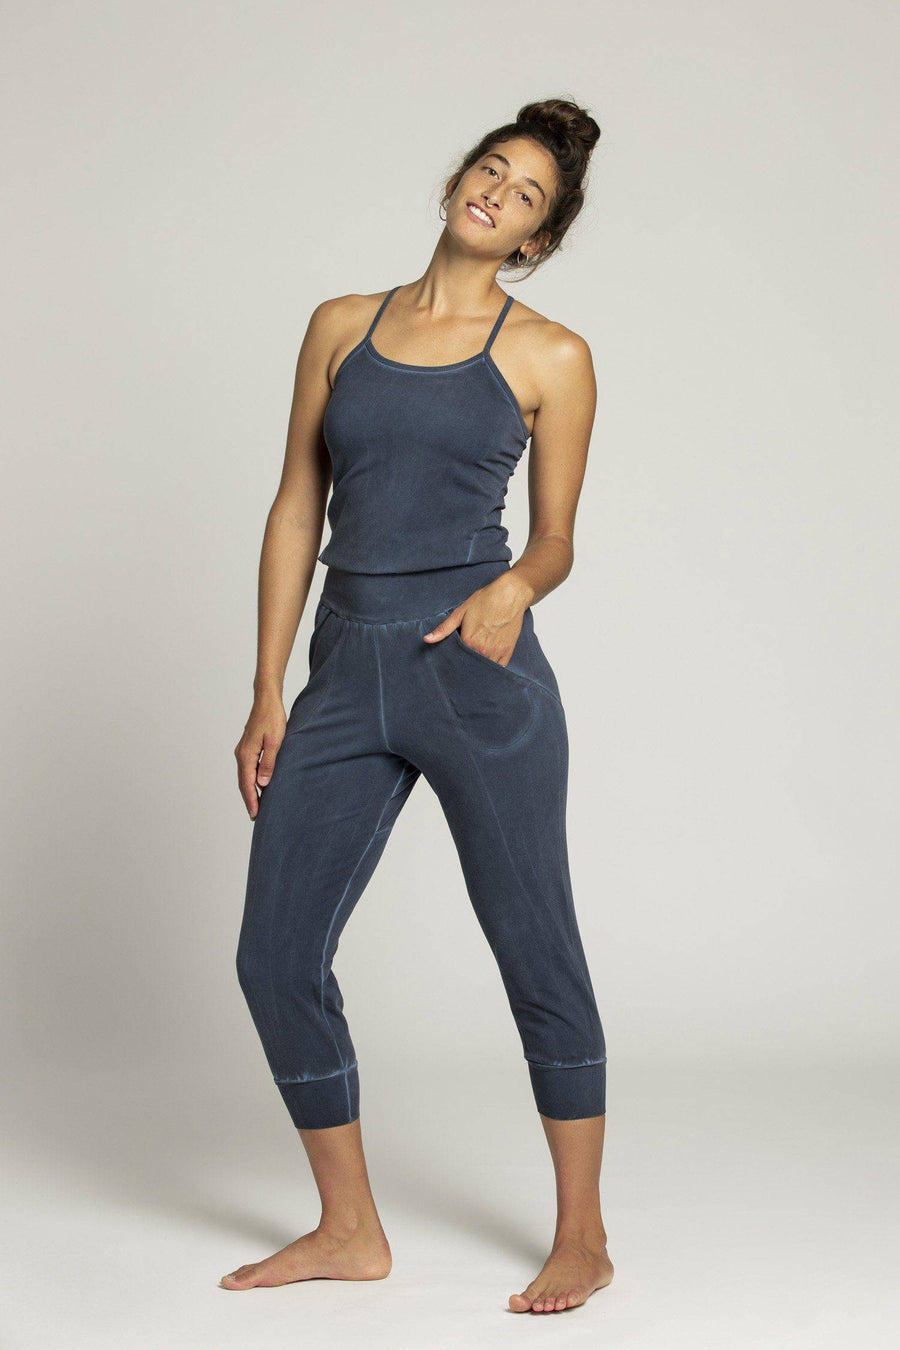 Yoga Jumpsuits - ripple yoga wear - rippleyogawear